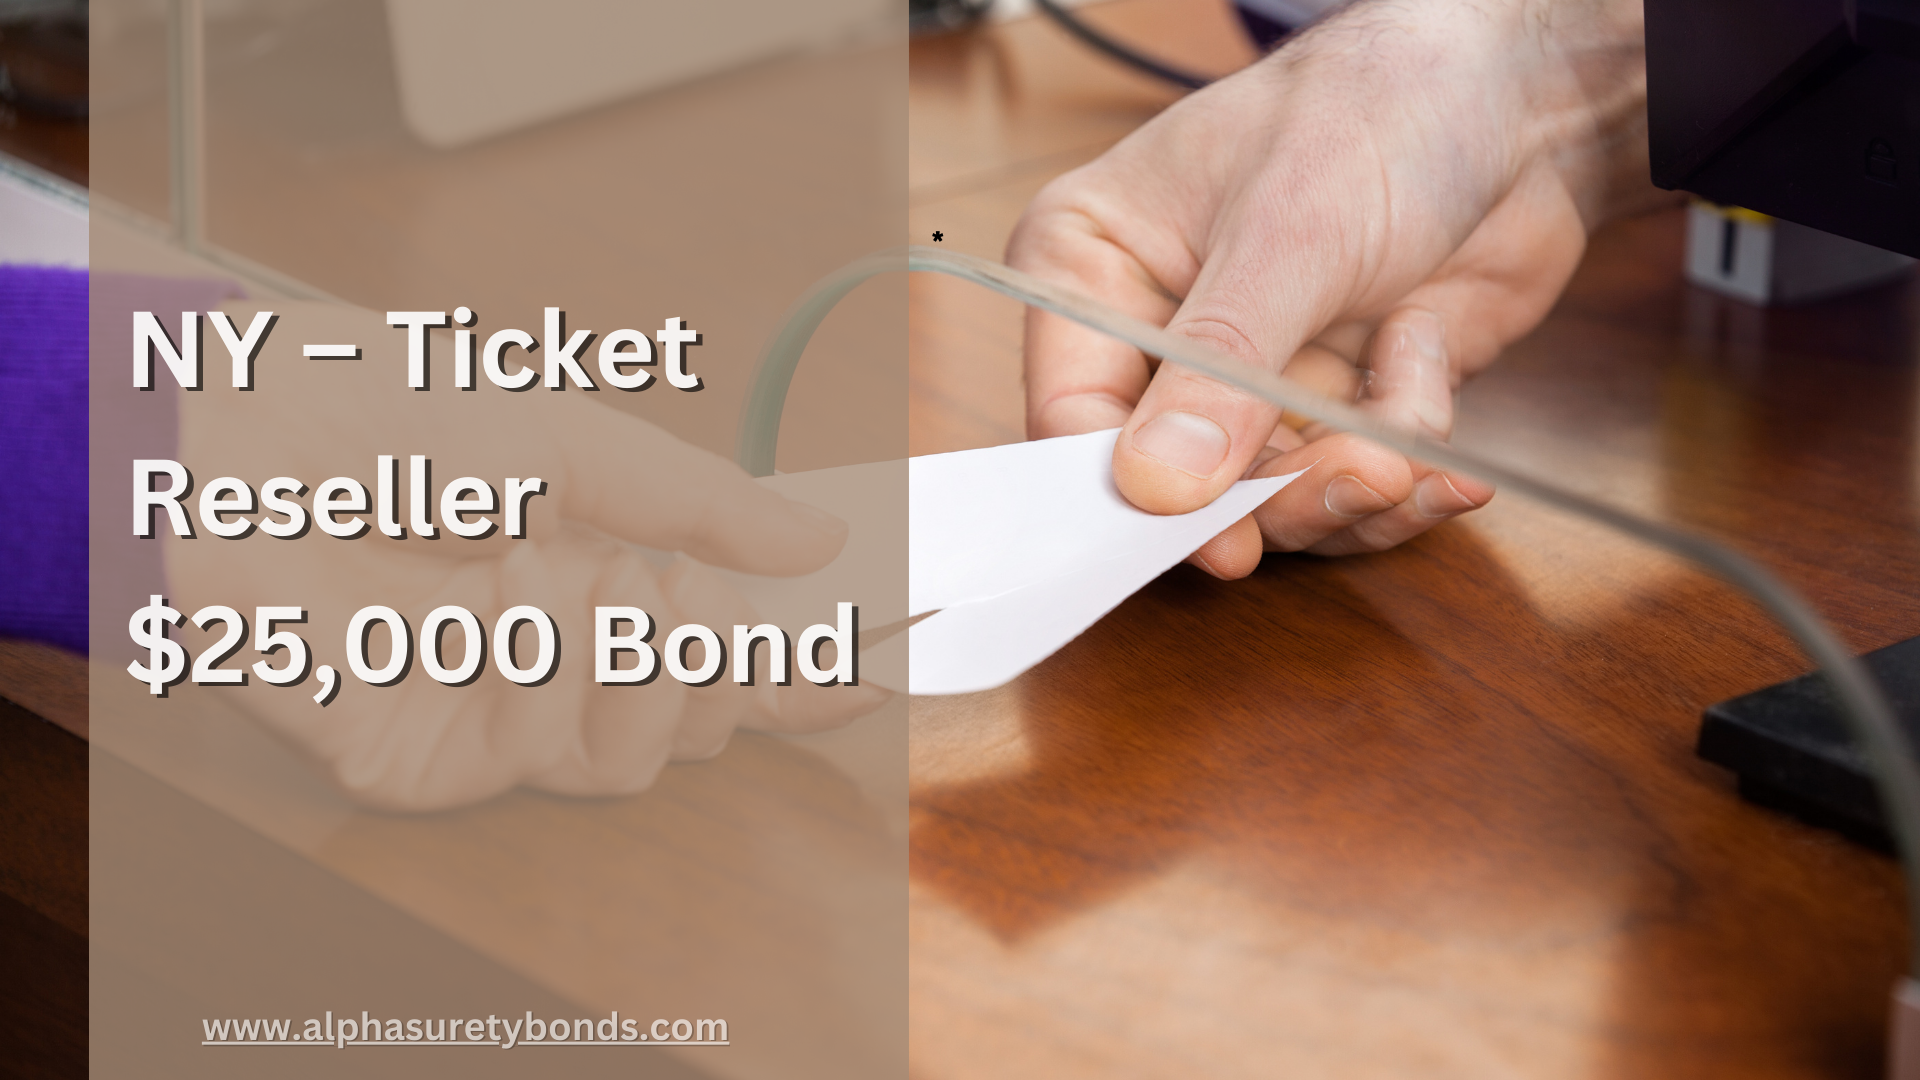 Surety Bond-NY – Ticket Reseller $25,000 Bond